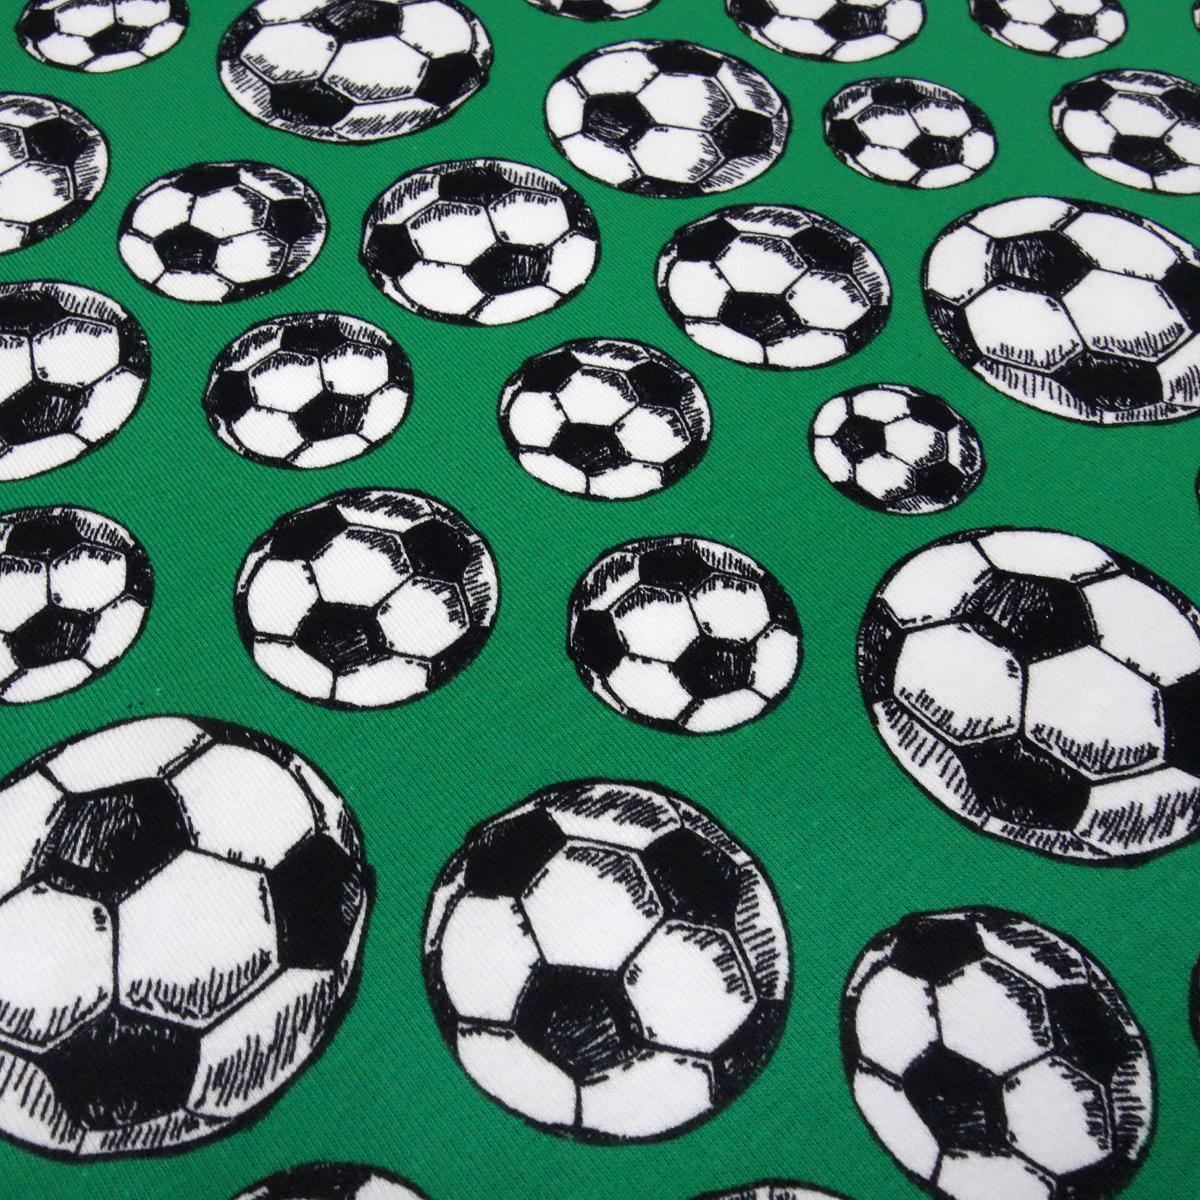 Stoff Baumwolle Jersey Fußball Soccer Bälle Design grün weiß schwarz Kinderstoff Kleiderstoff